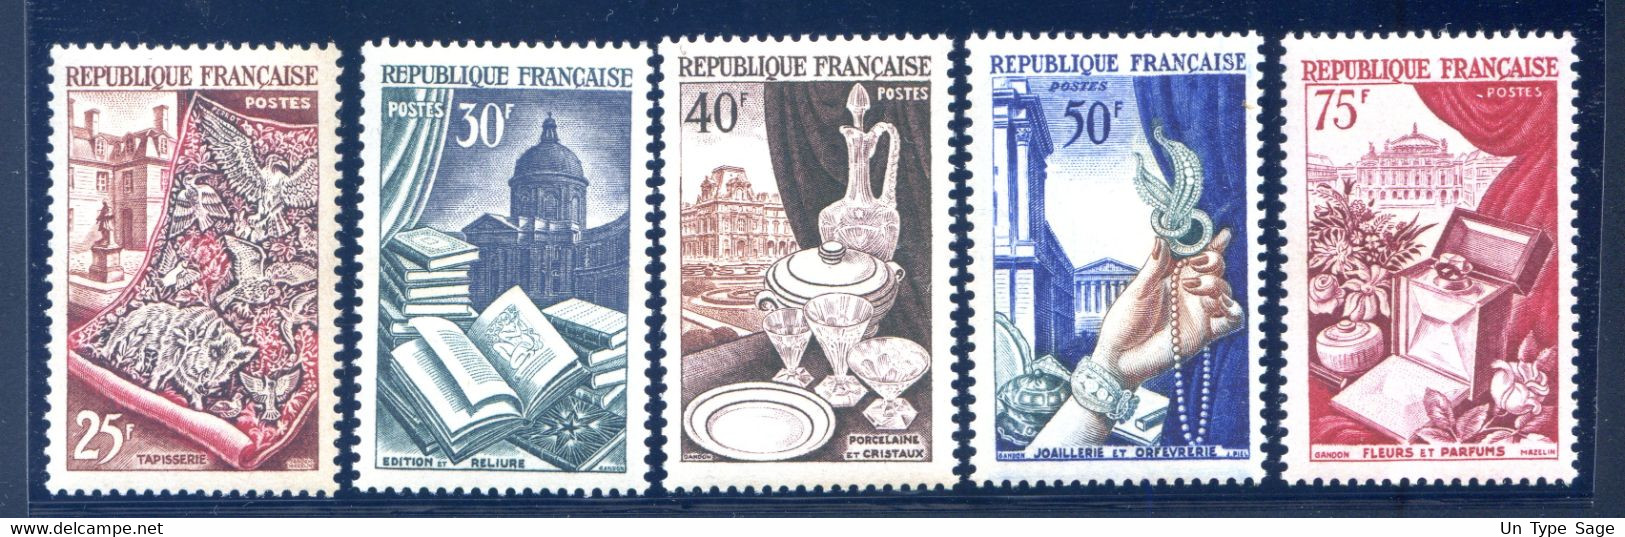 France N°970 à 974 Série Métiers D'Art - Neuf** Cote 43€ - (F135) - Ongebruikt